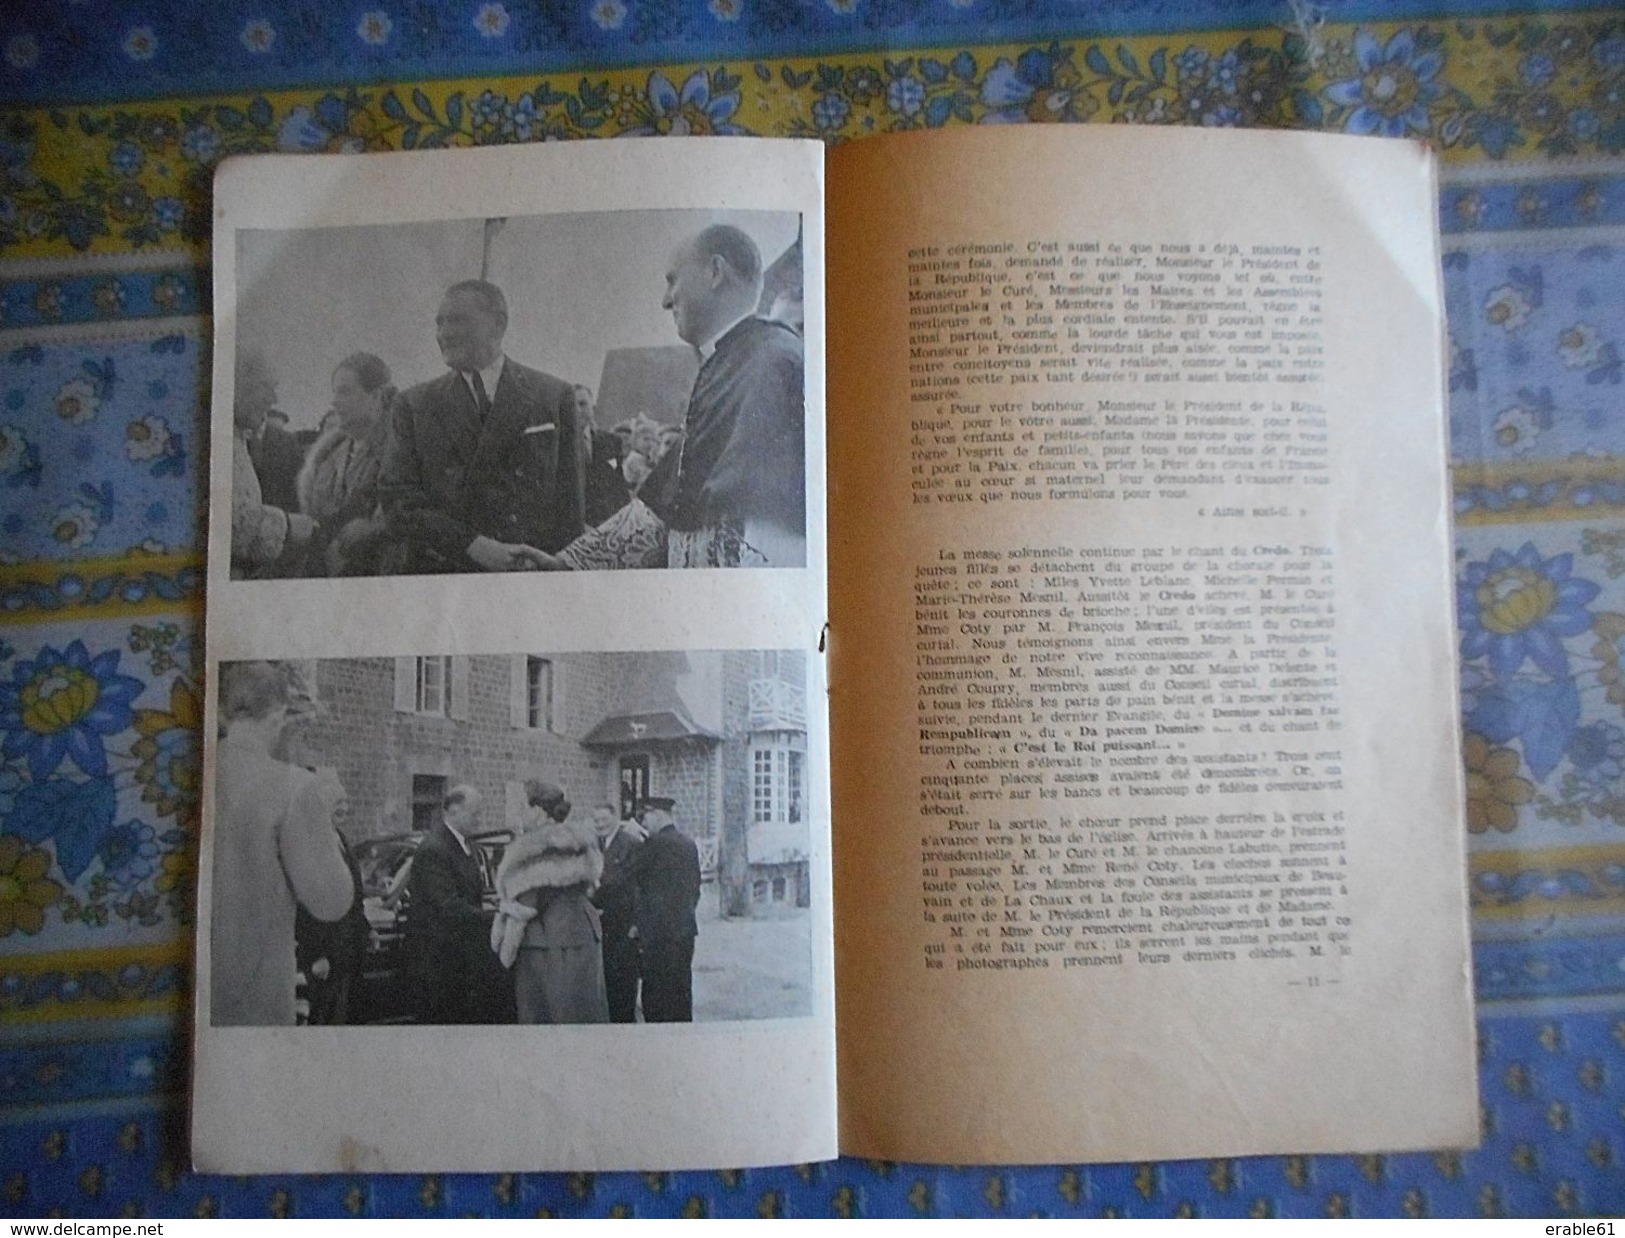 La GERAUDAIE OU L' ELYSEE EN BEAUVAIN ORNE 1954 Visite De Mr Et Mme COTY PRESIDENT DE LA REPUBLIQUE - Normandie